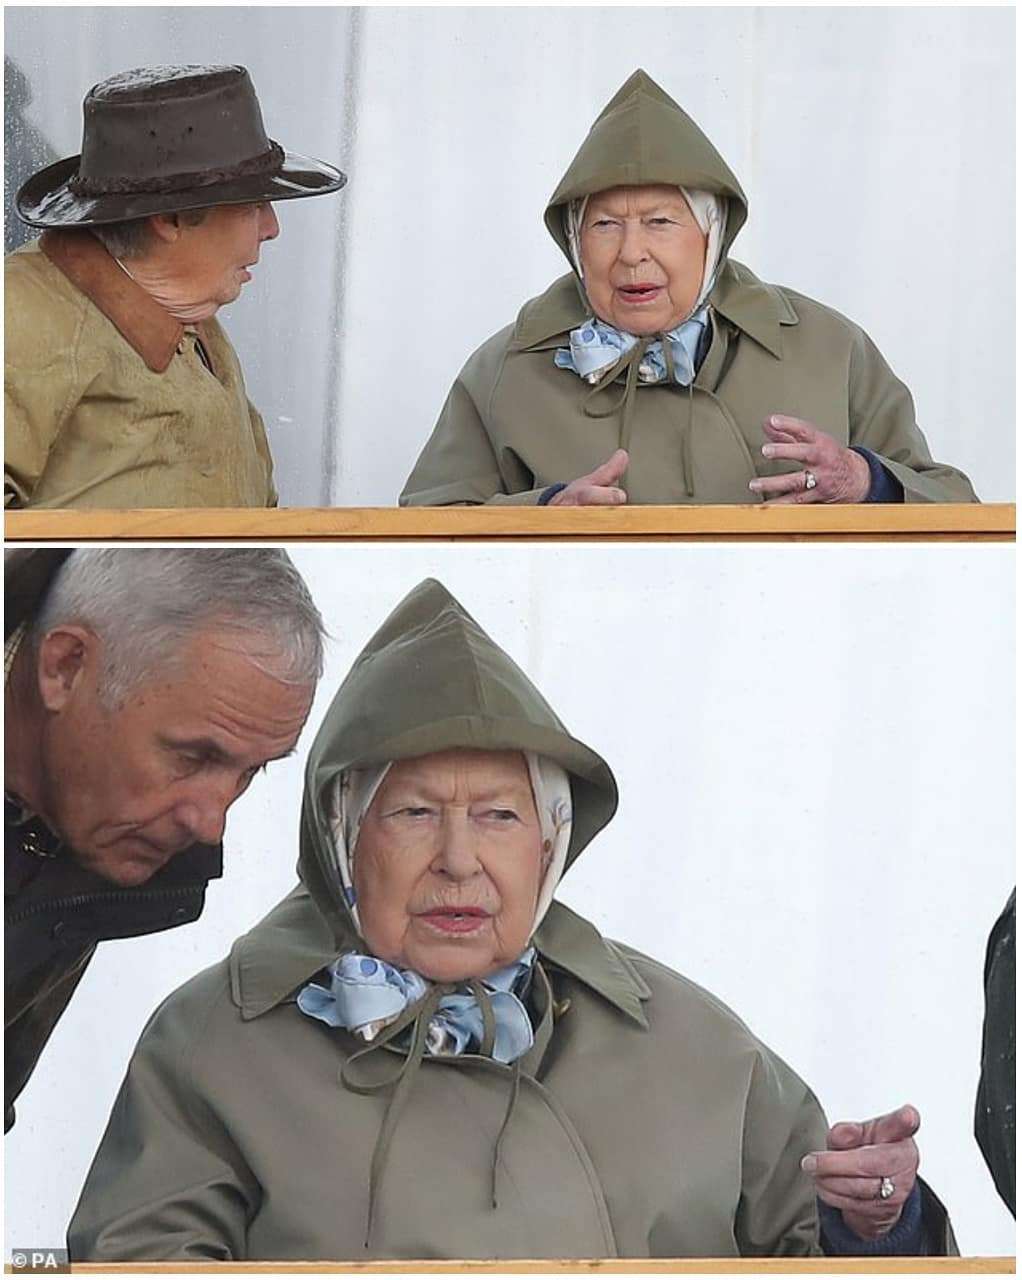 Королева Єлизавета ІІ вболівала на скачках і її вирази обличчя заслуговують 'Оскара' - фото 432549